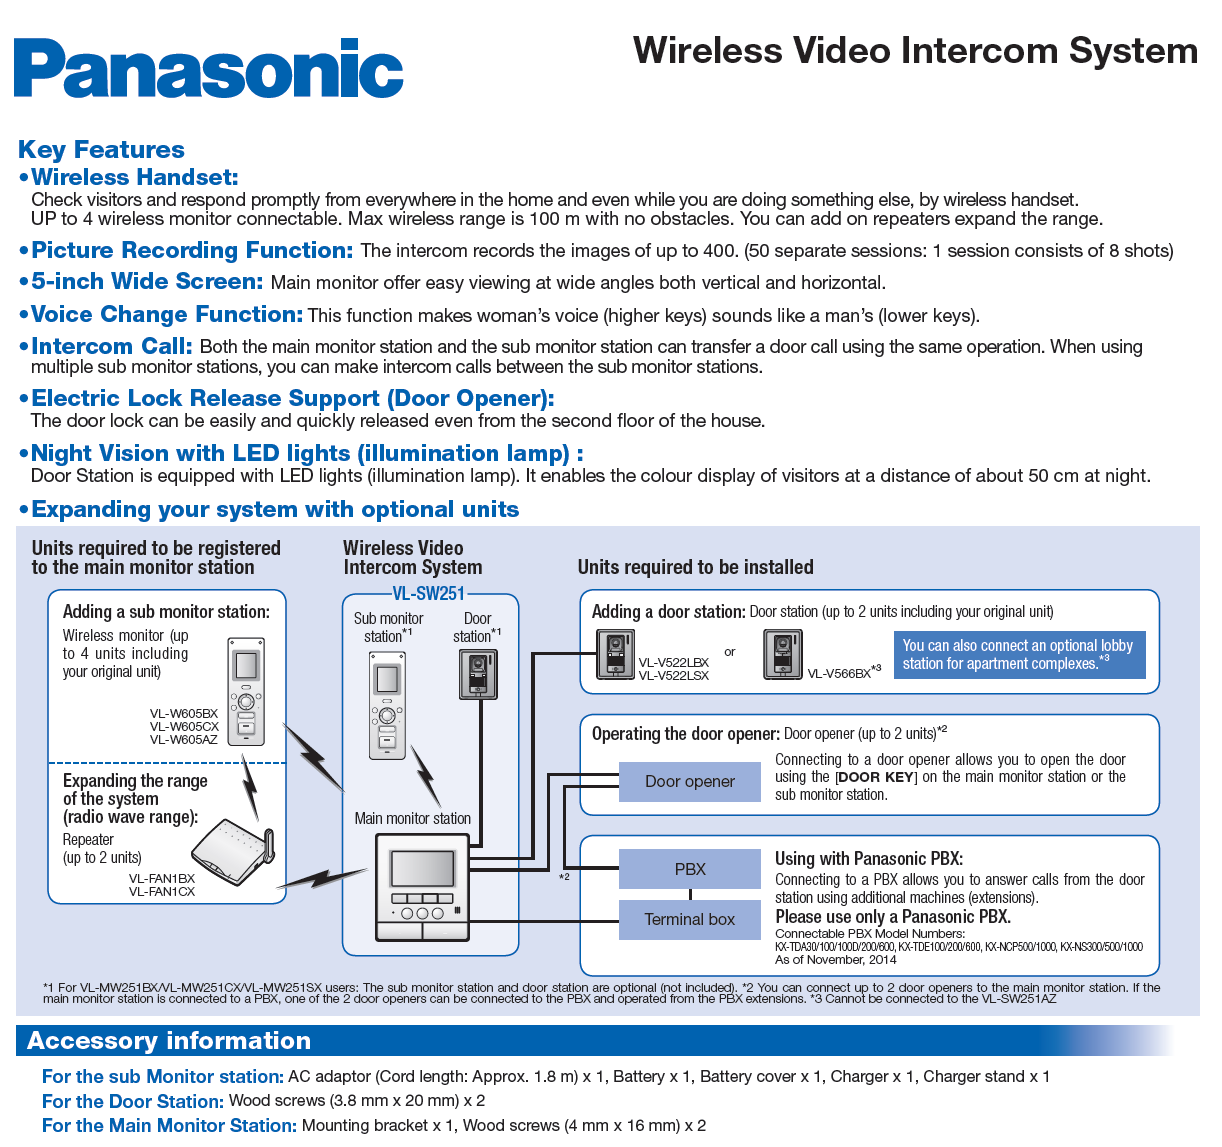 Panasonic Video Door Phone Suppliers ATSS, Panasonic Video Intercom System, Panasonic Video Door Phone Installation, Panasonic Video Door Phone Price in India, Panasonic Intercom System Price, Panasonic Wireless Video Itercom System.